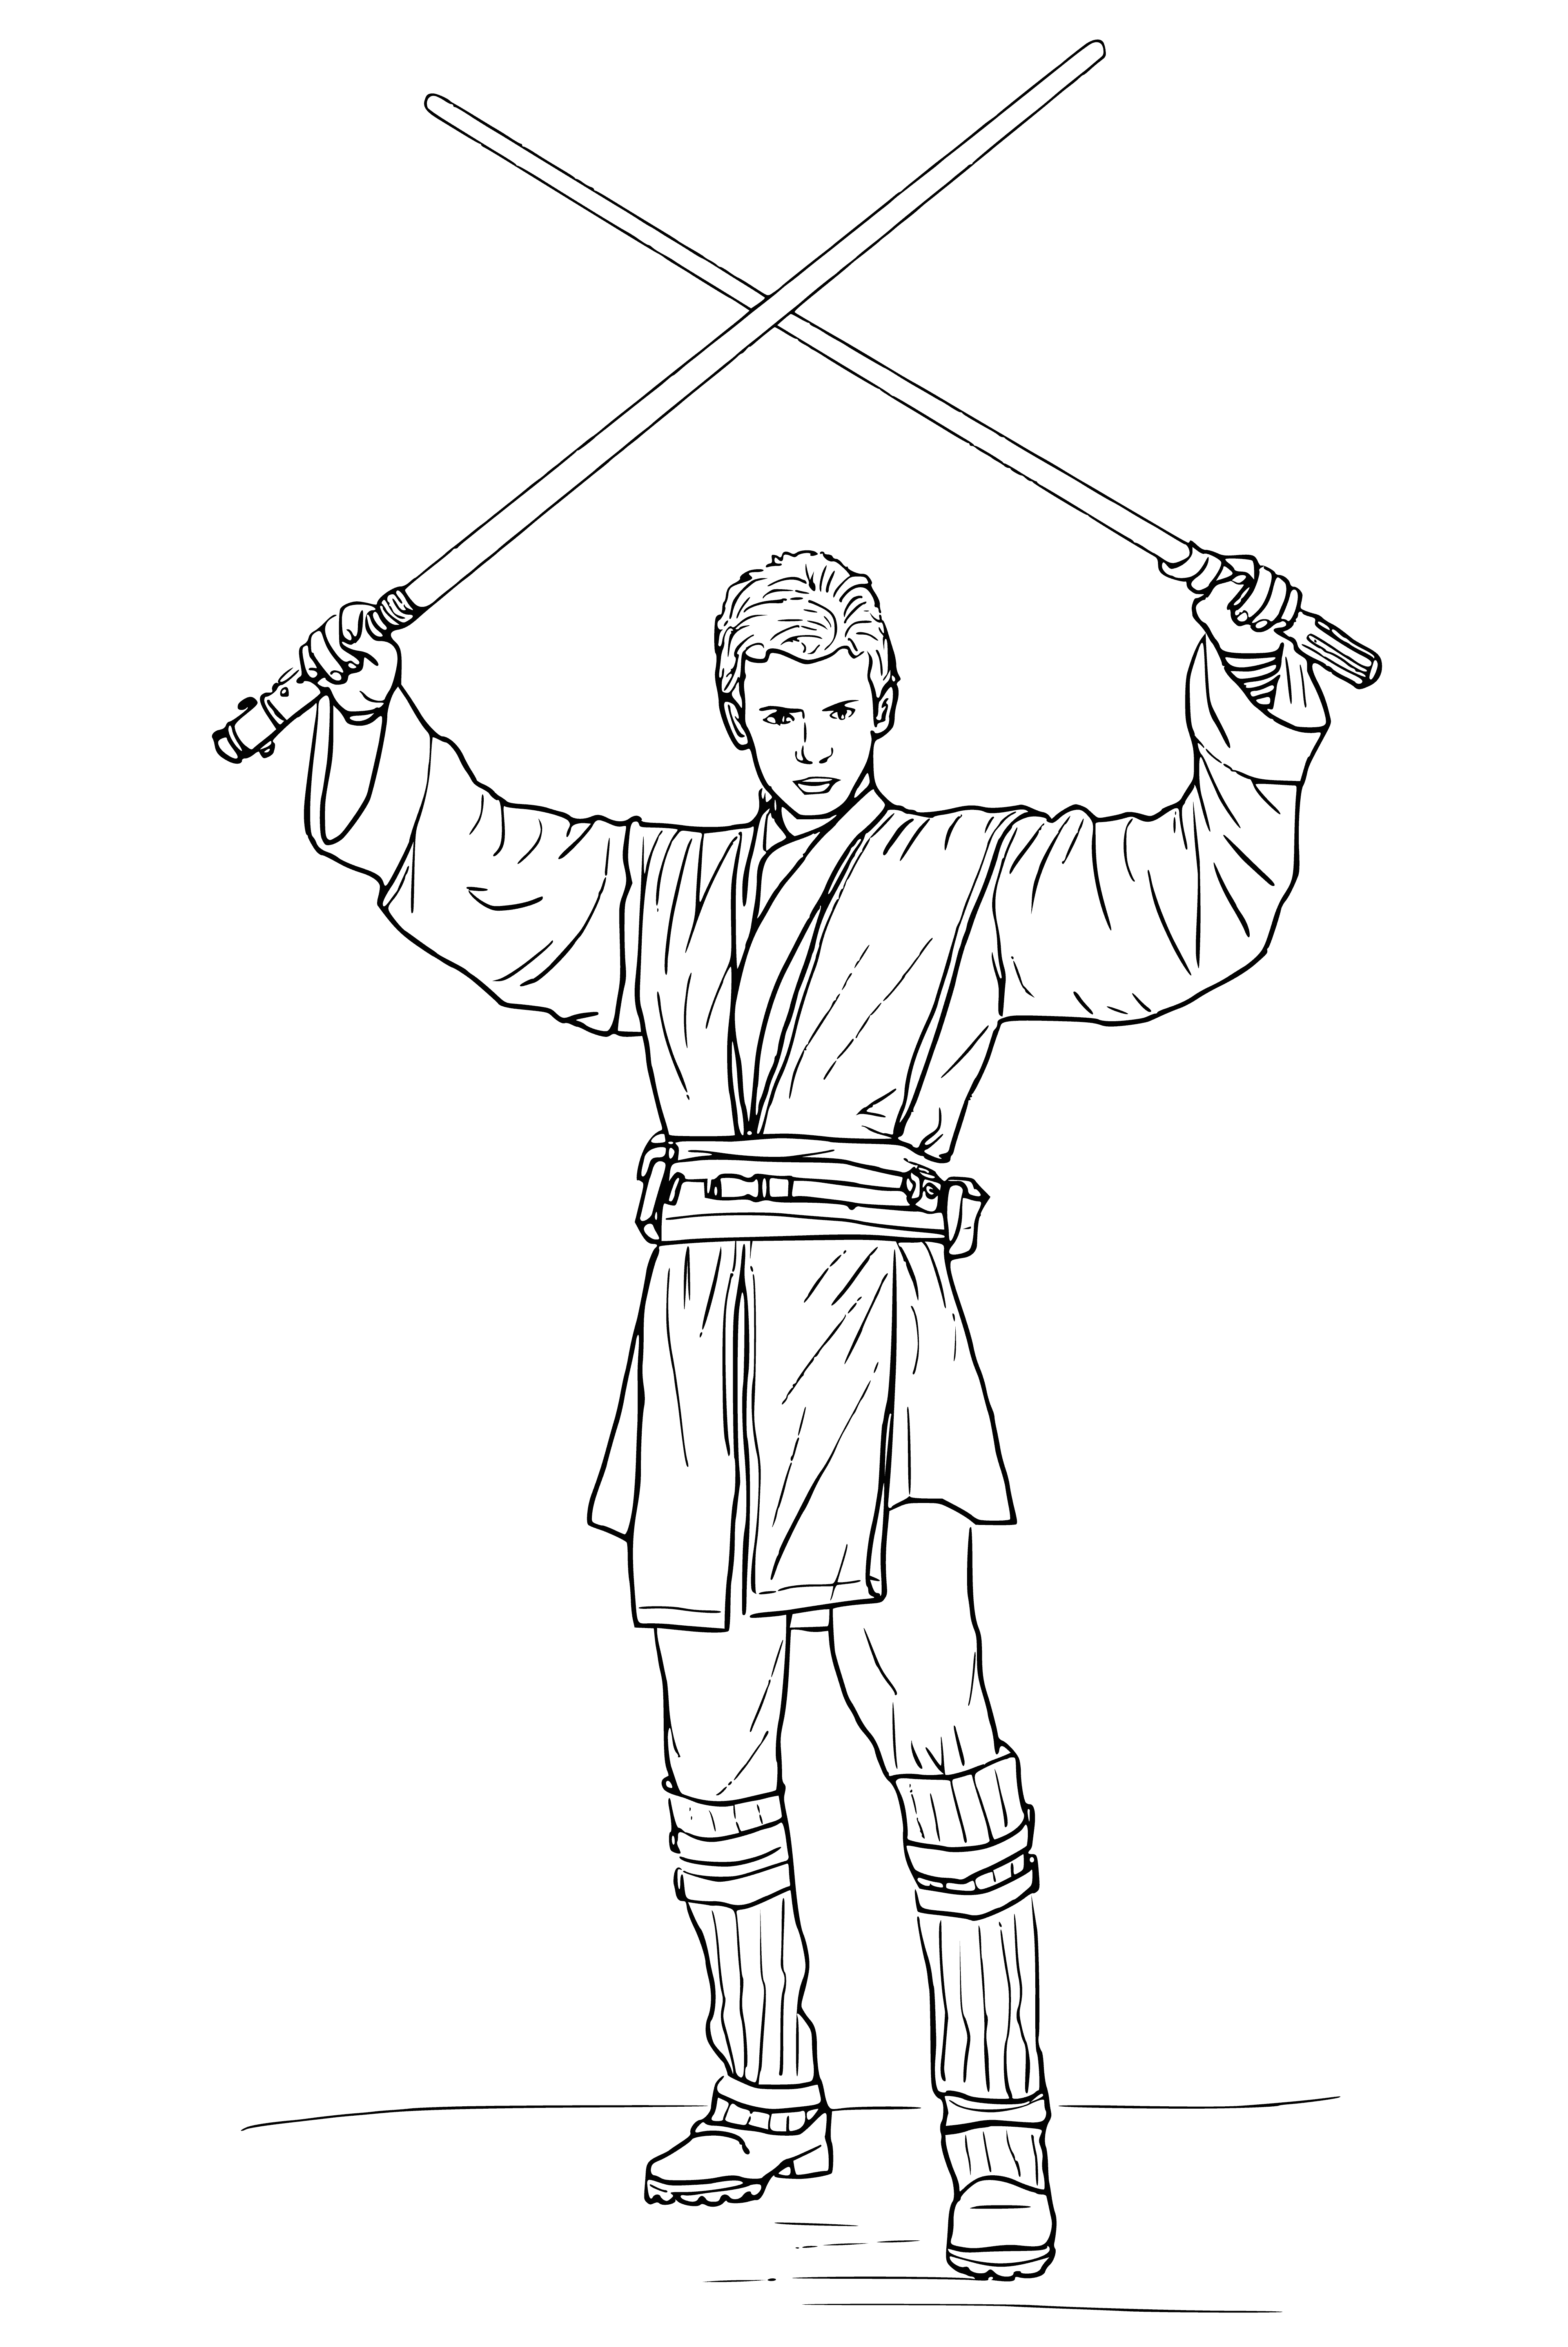 Enakin Skywalker coloring page